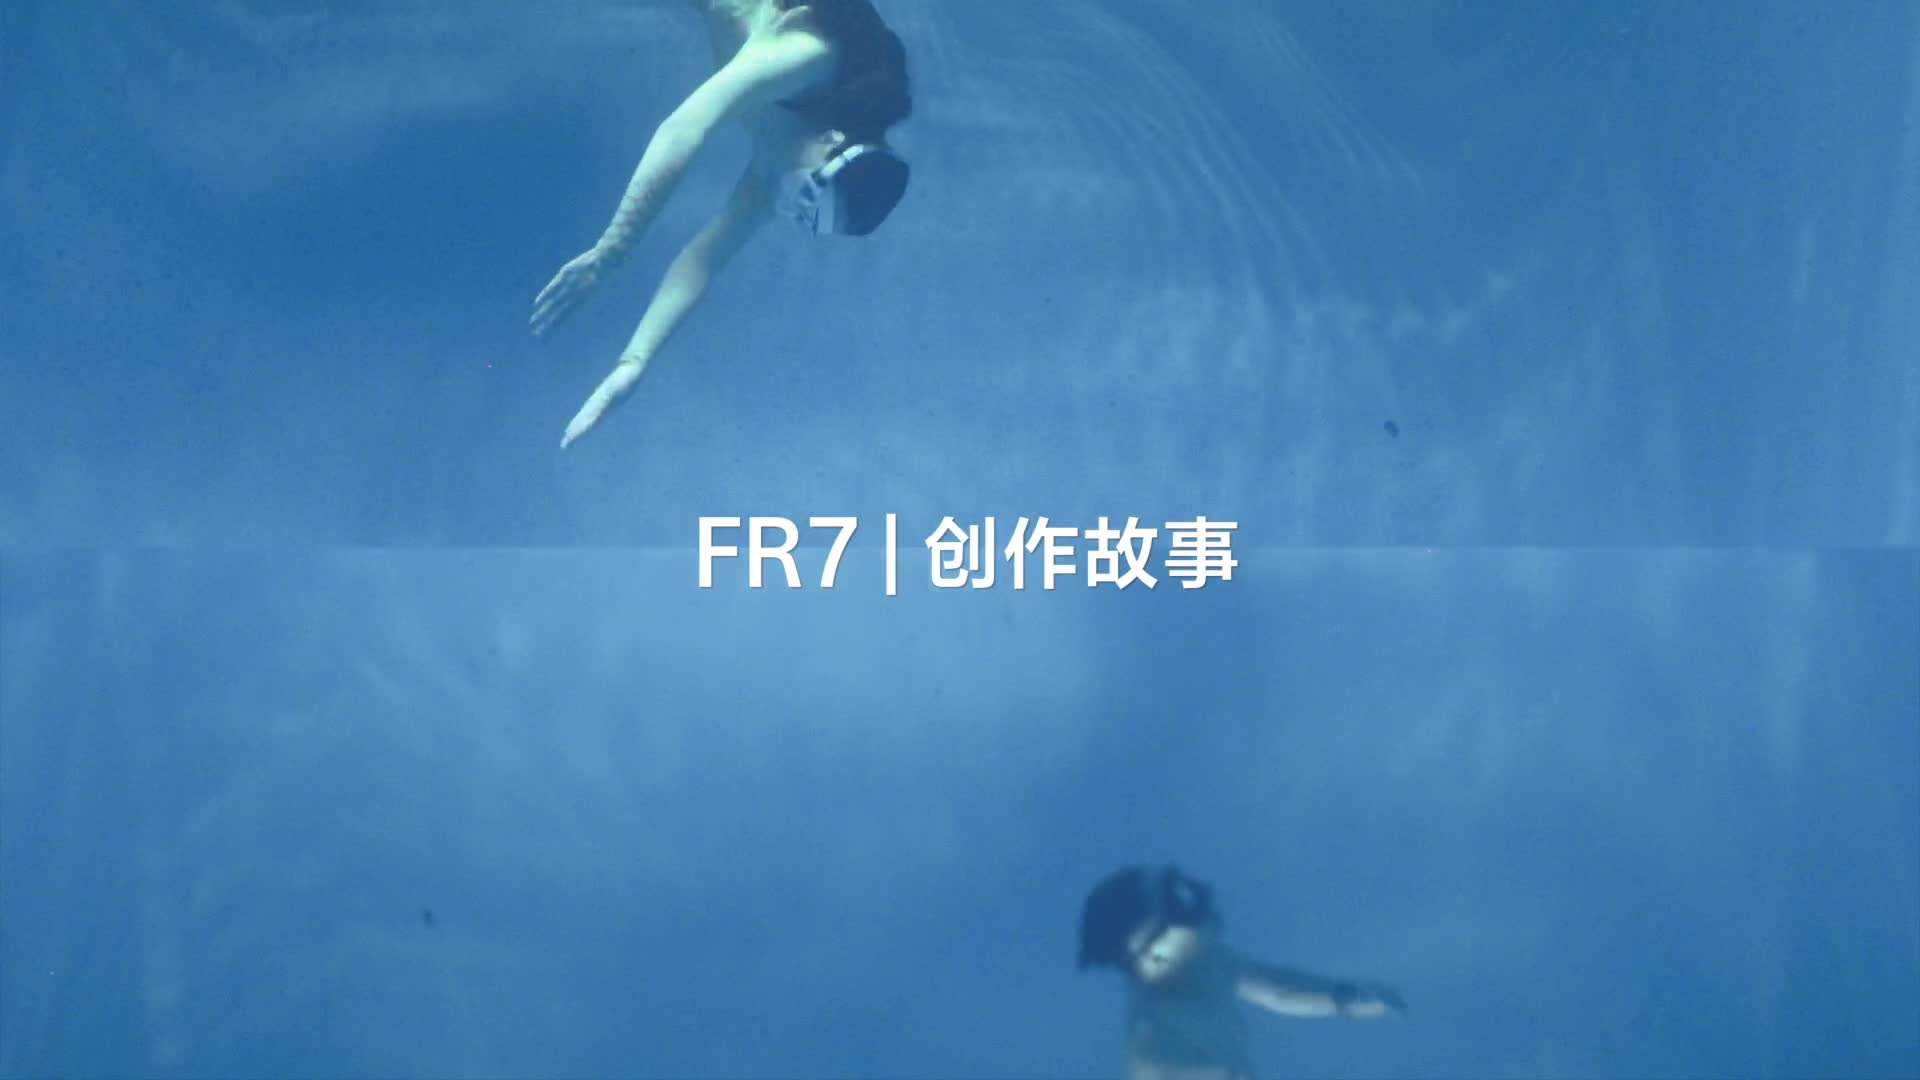 FR7创作故事-水下篇